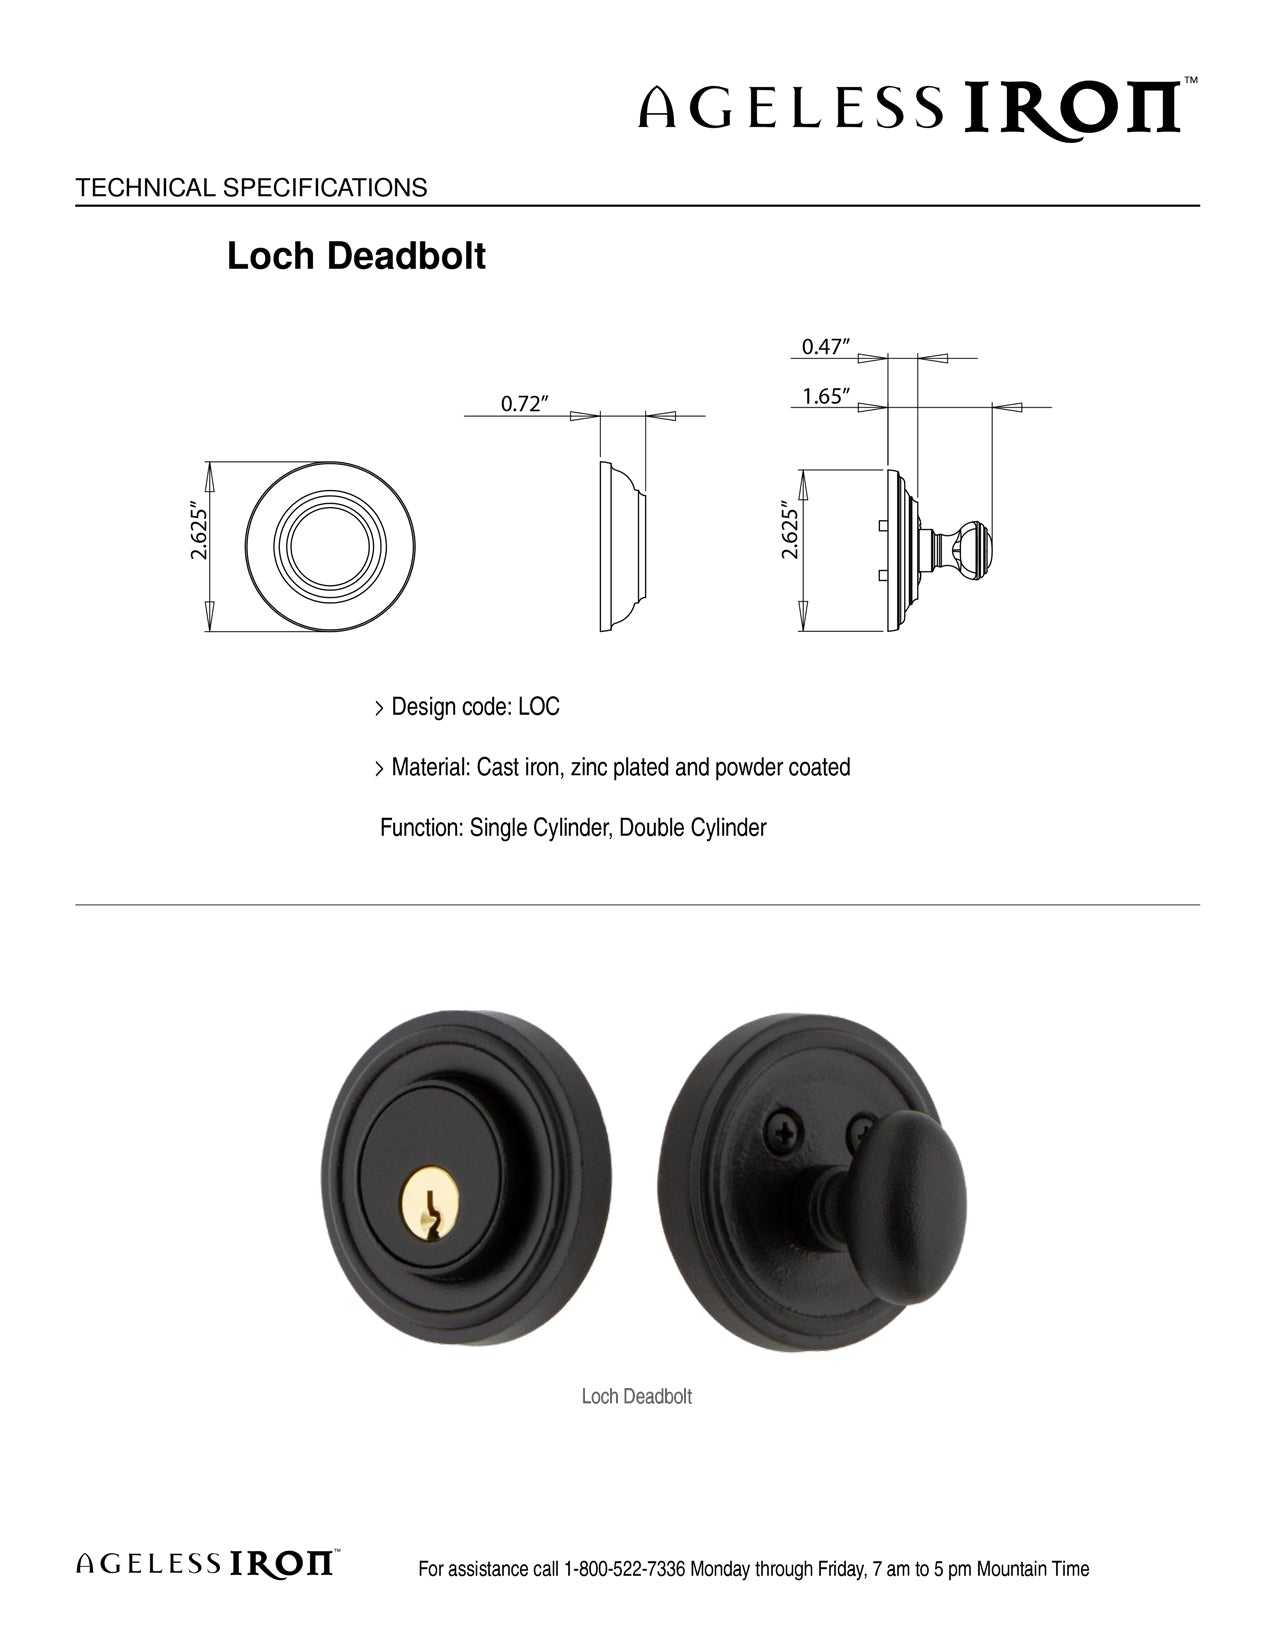 Loch Deadbolt Technical Specs